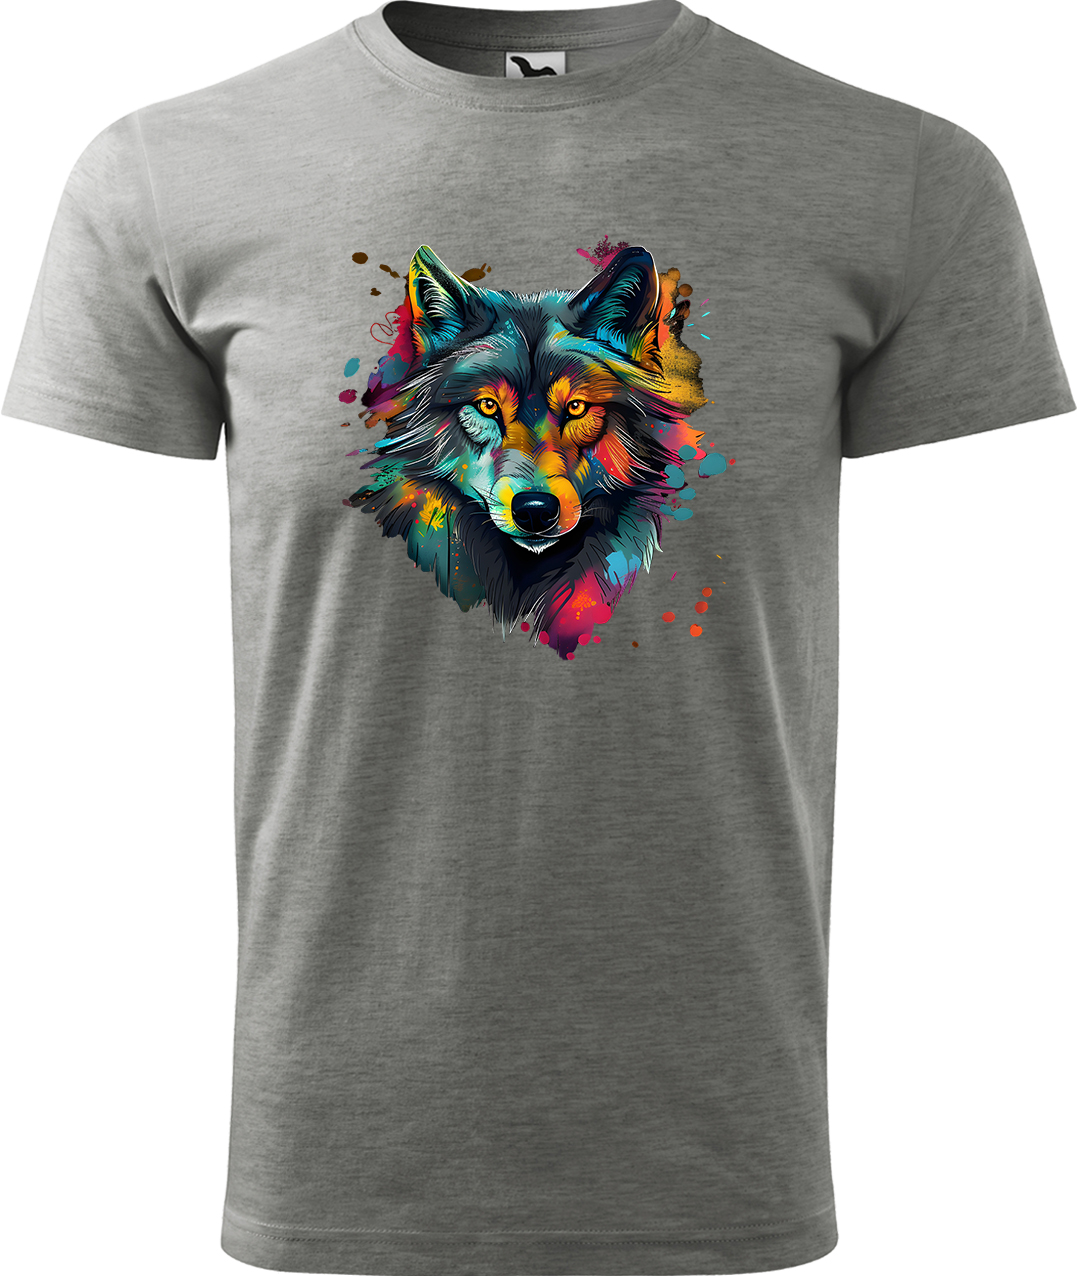 Pánské tričko s vlkem - Malovaný vlk Velikost: M, Barva: Tmavě šedý melír (12), Střih: pánský